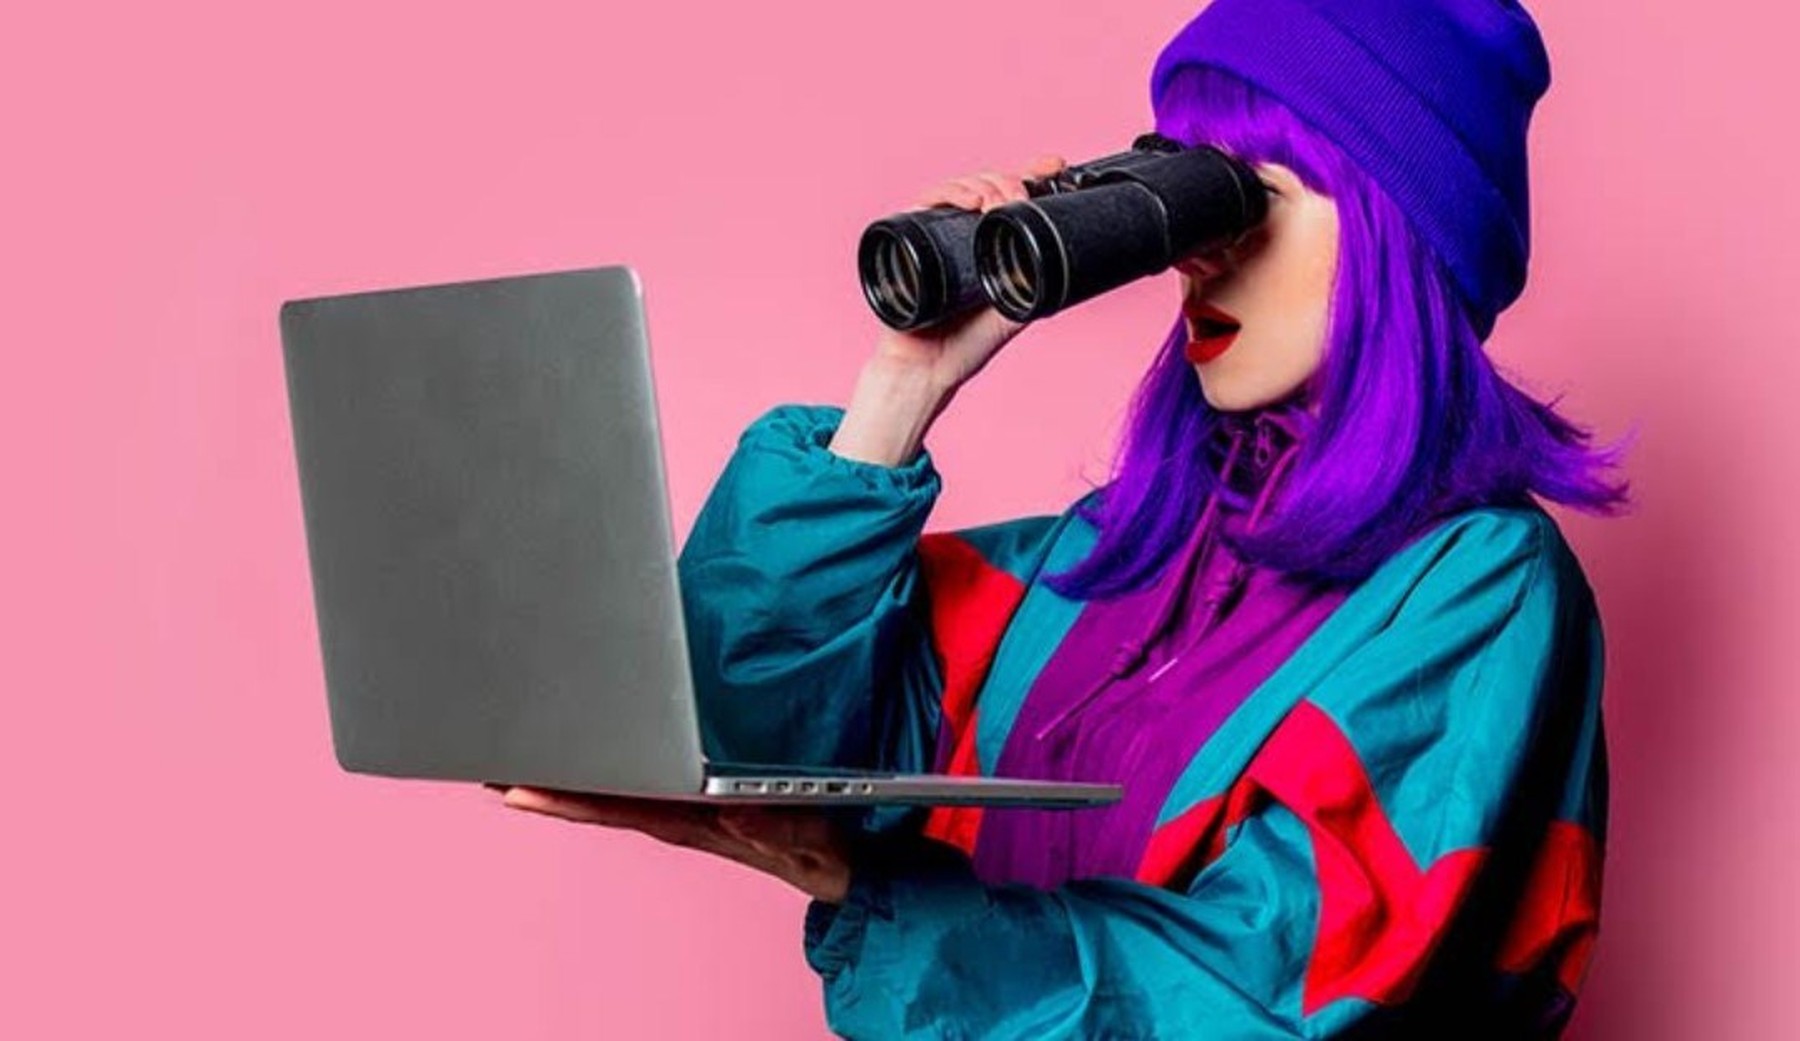 Vrouw met paars haar kijkt door verrekijker naar laptop